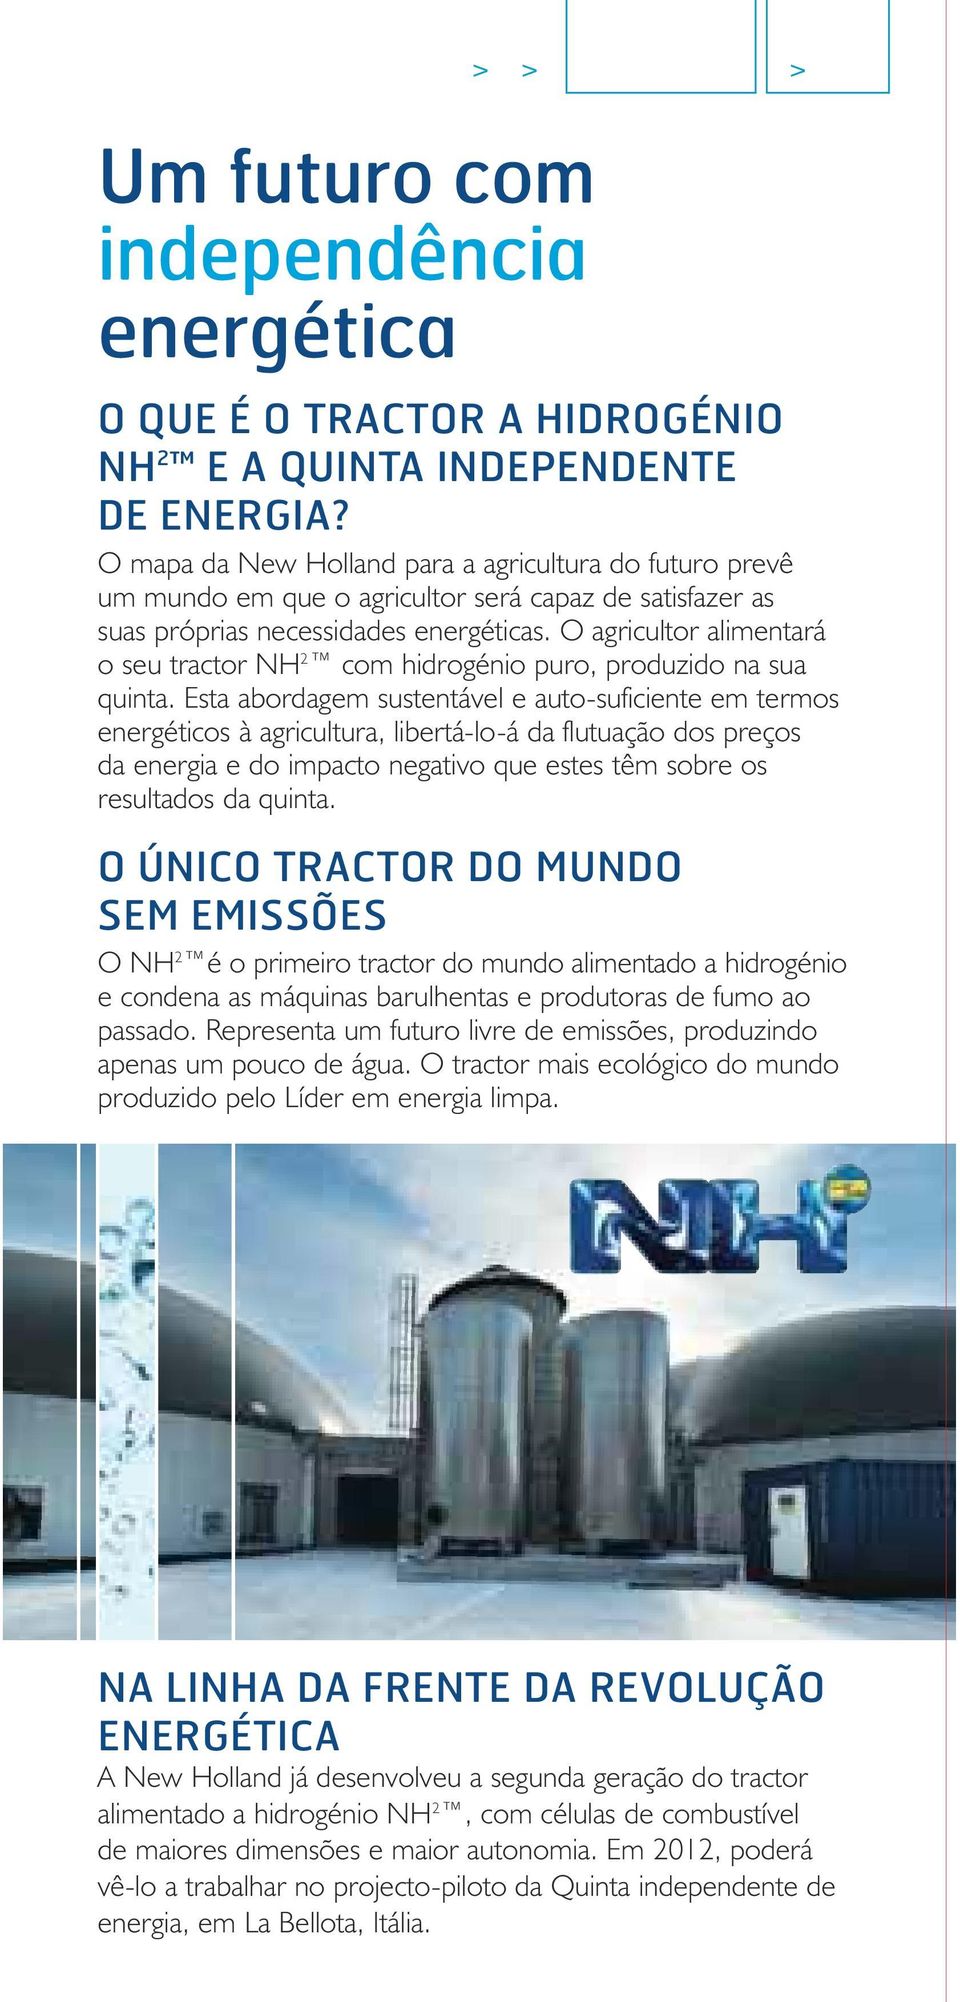 O agricultor alimentará o seu tractor NH 2 com hidrogénio puro, produzido na sua quinta.